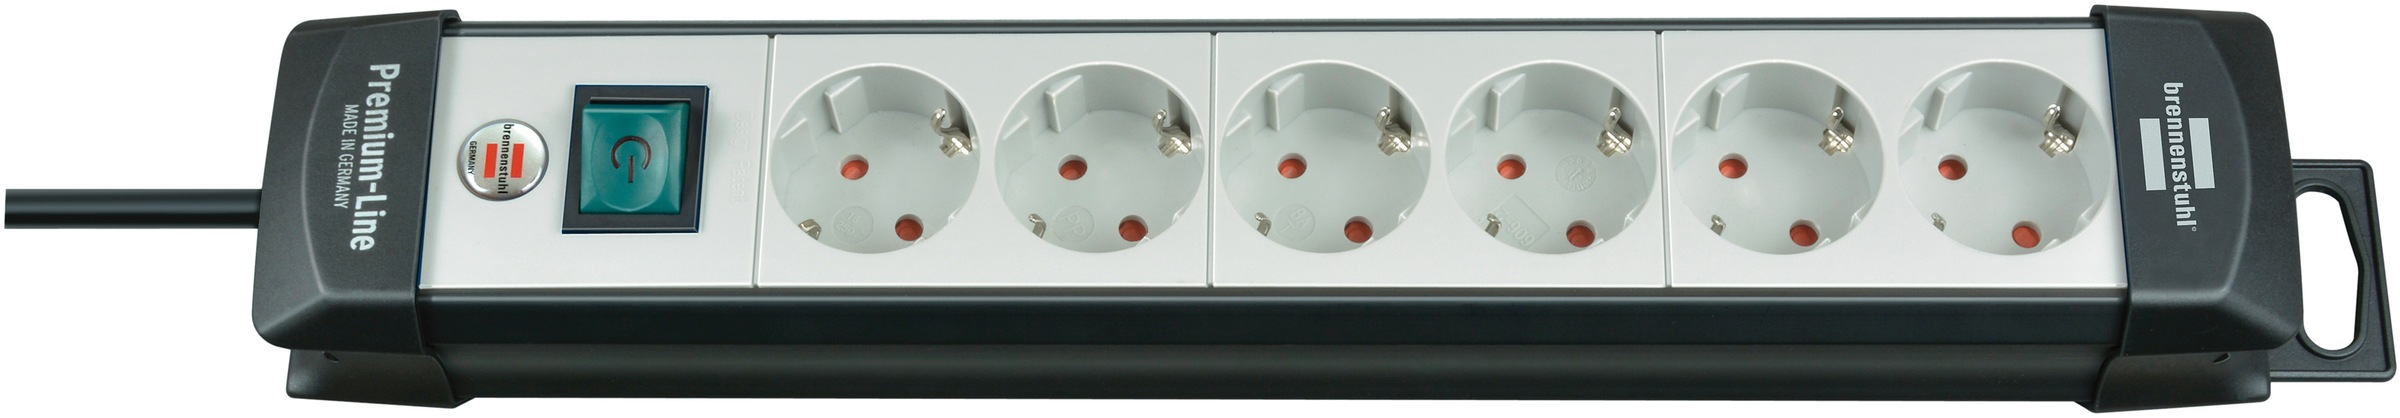 Brennenstuhl Steckdosenleiste "Premium-Line", 6-fach, (Kabellänge 3 m), mit Schalter und 45 Anordnung der Steckdosen